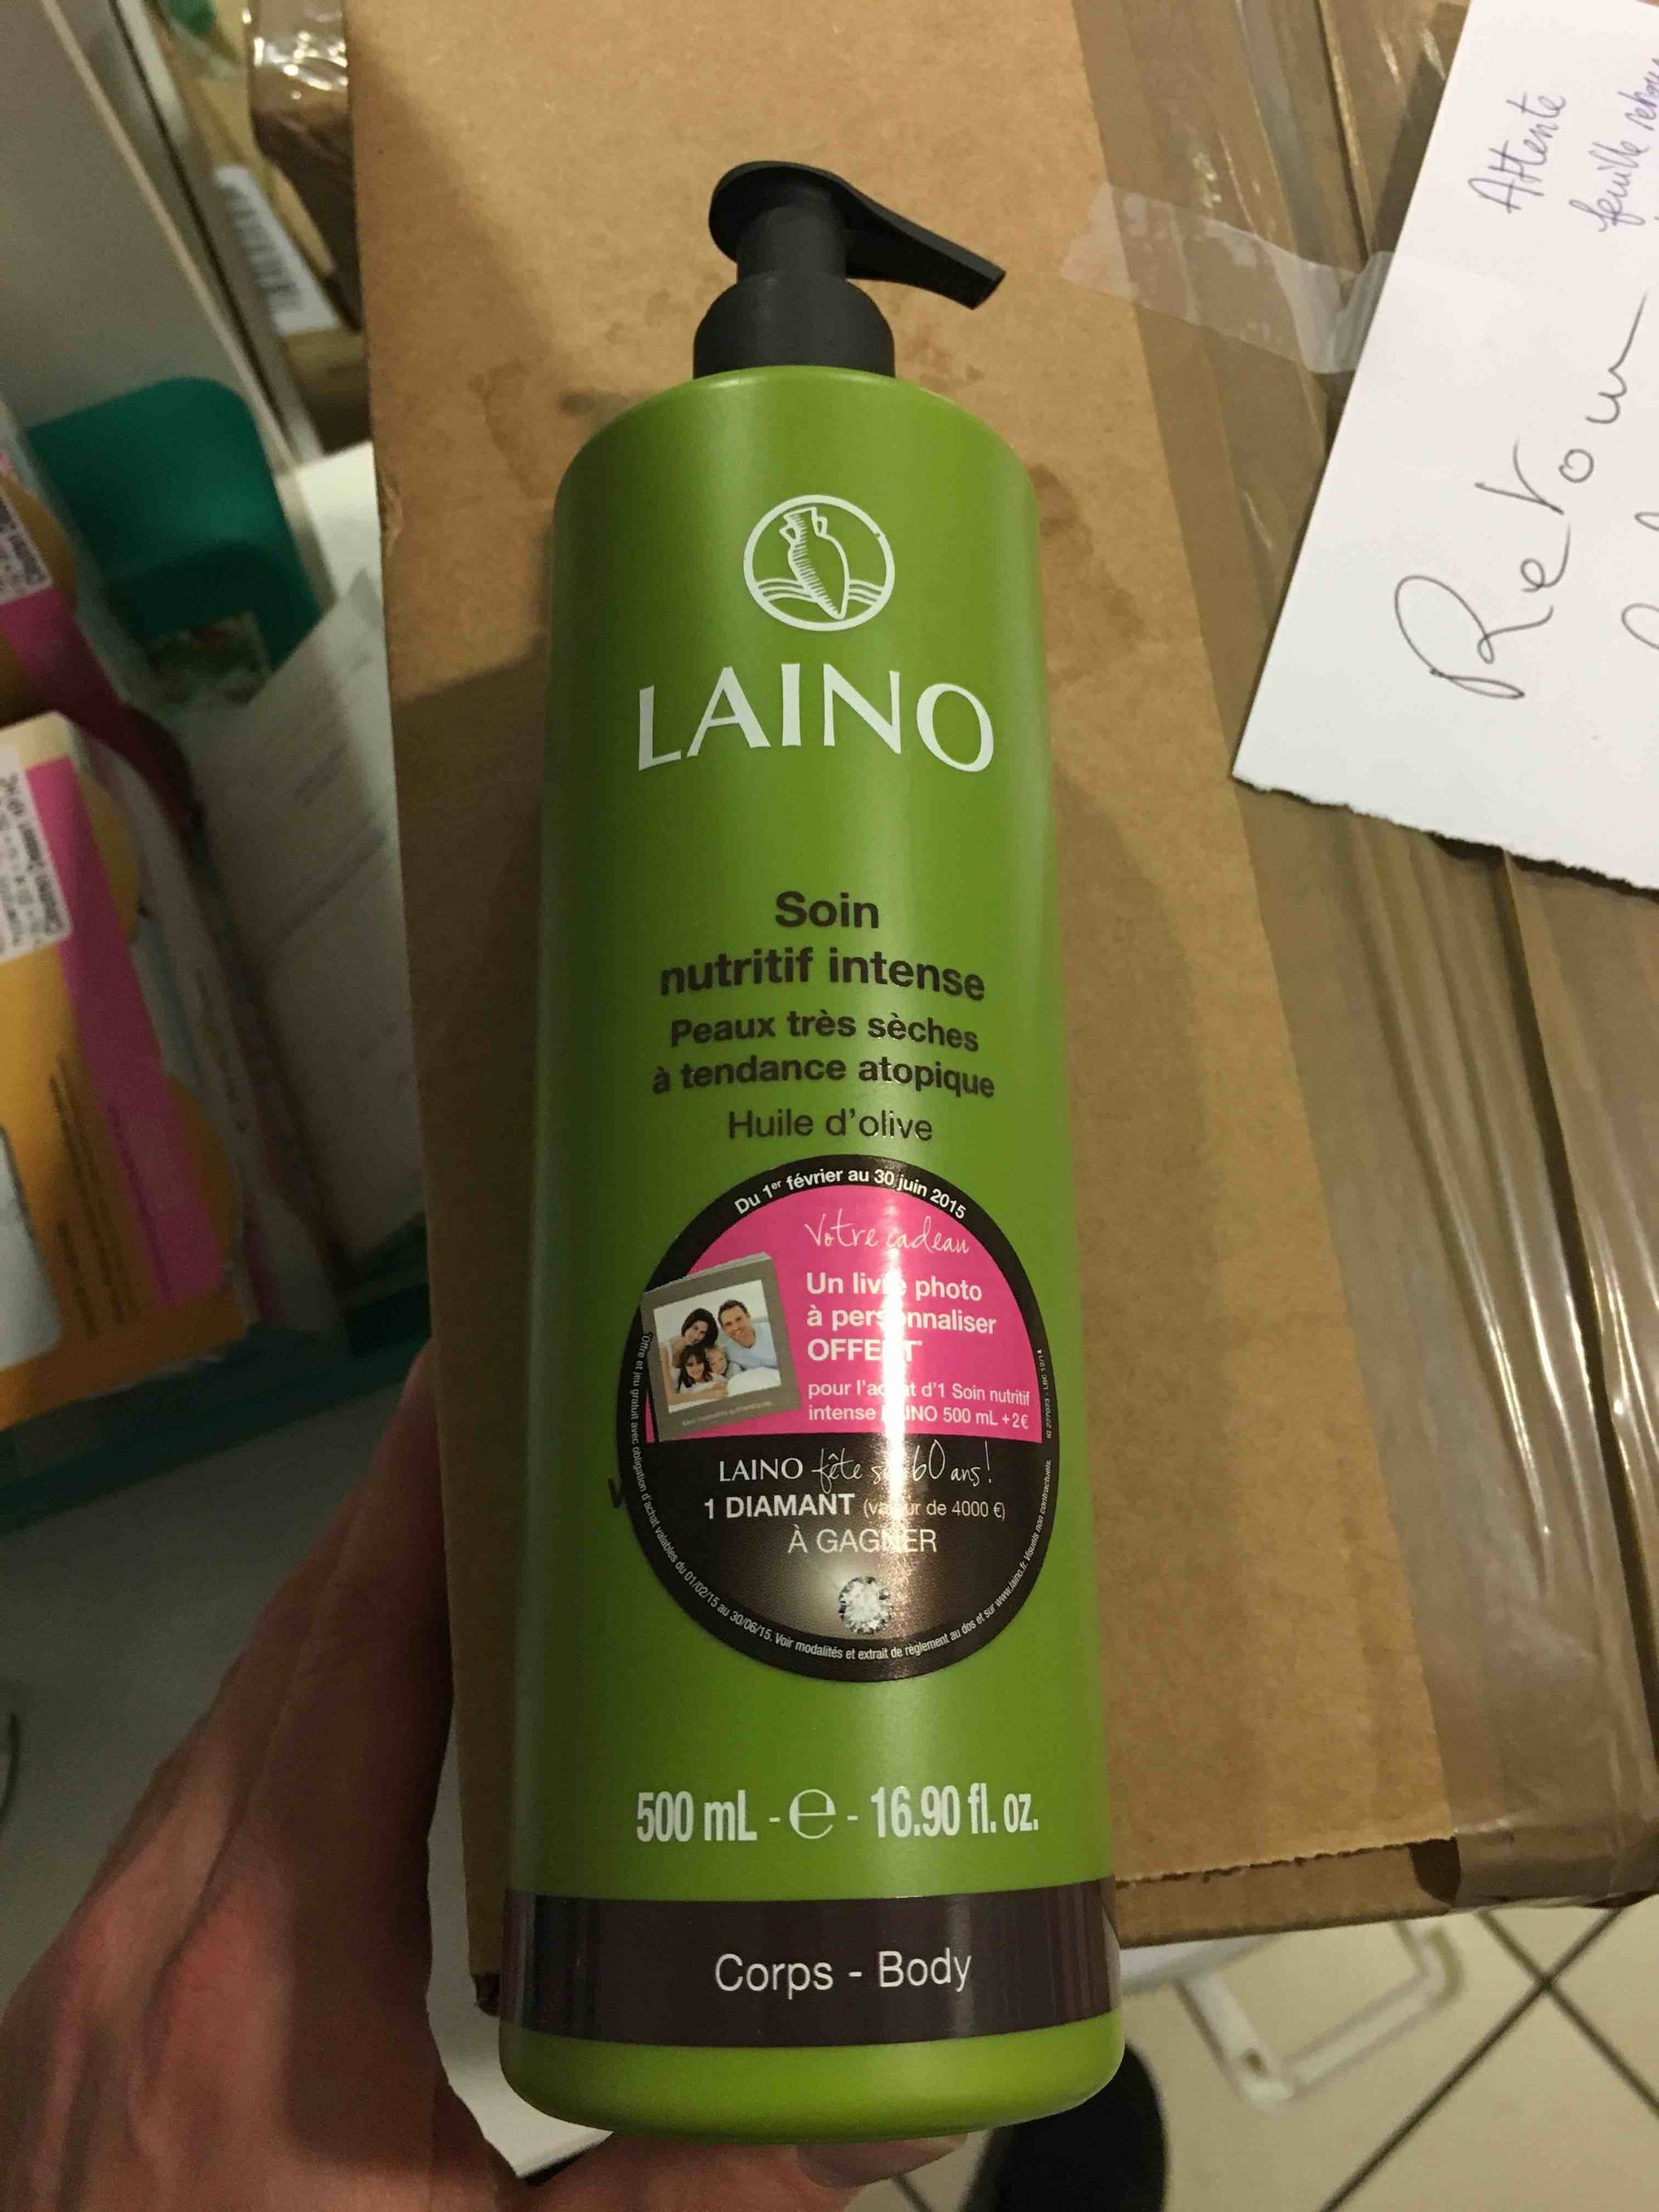 LAINO - Soin nutritif intense à l'huile d'olive